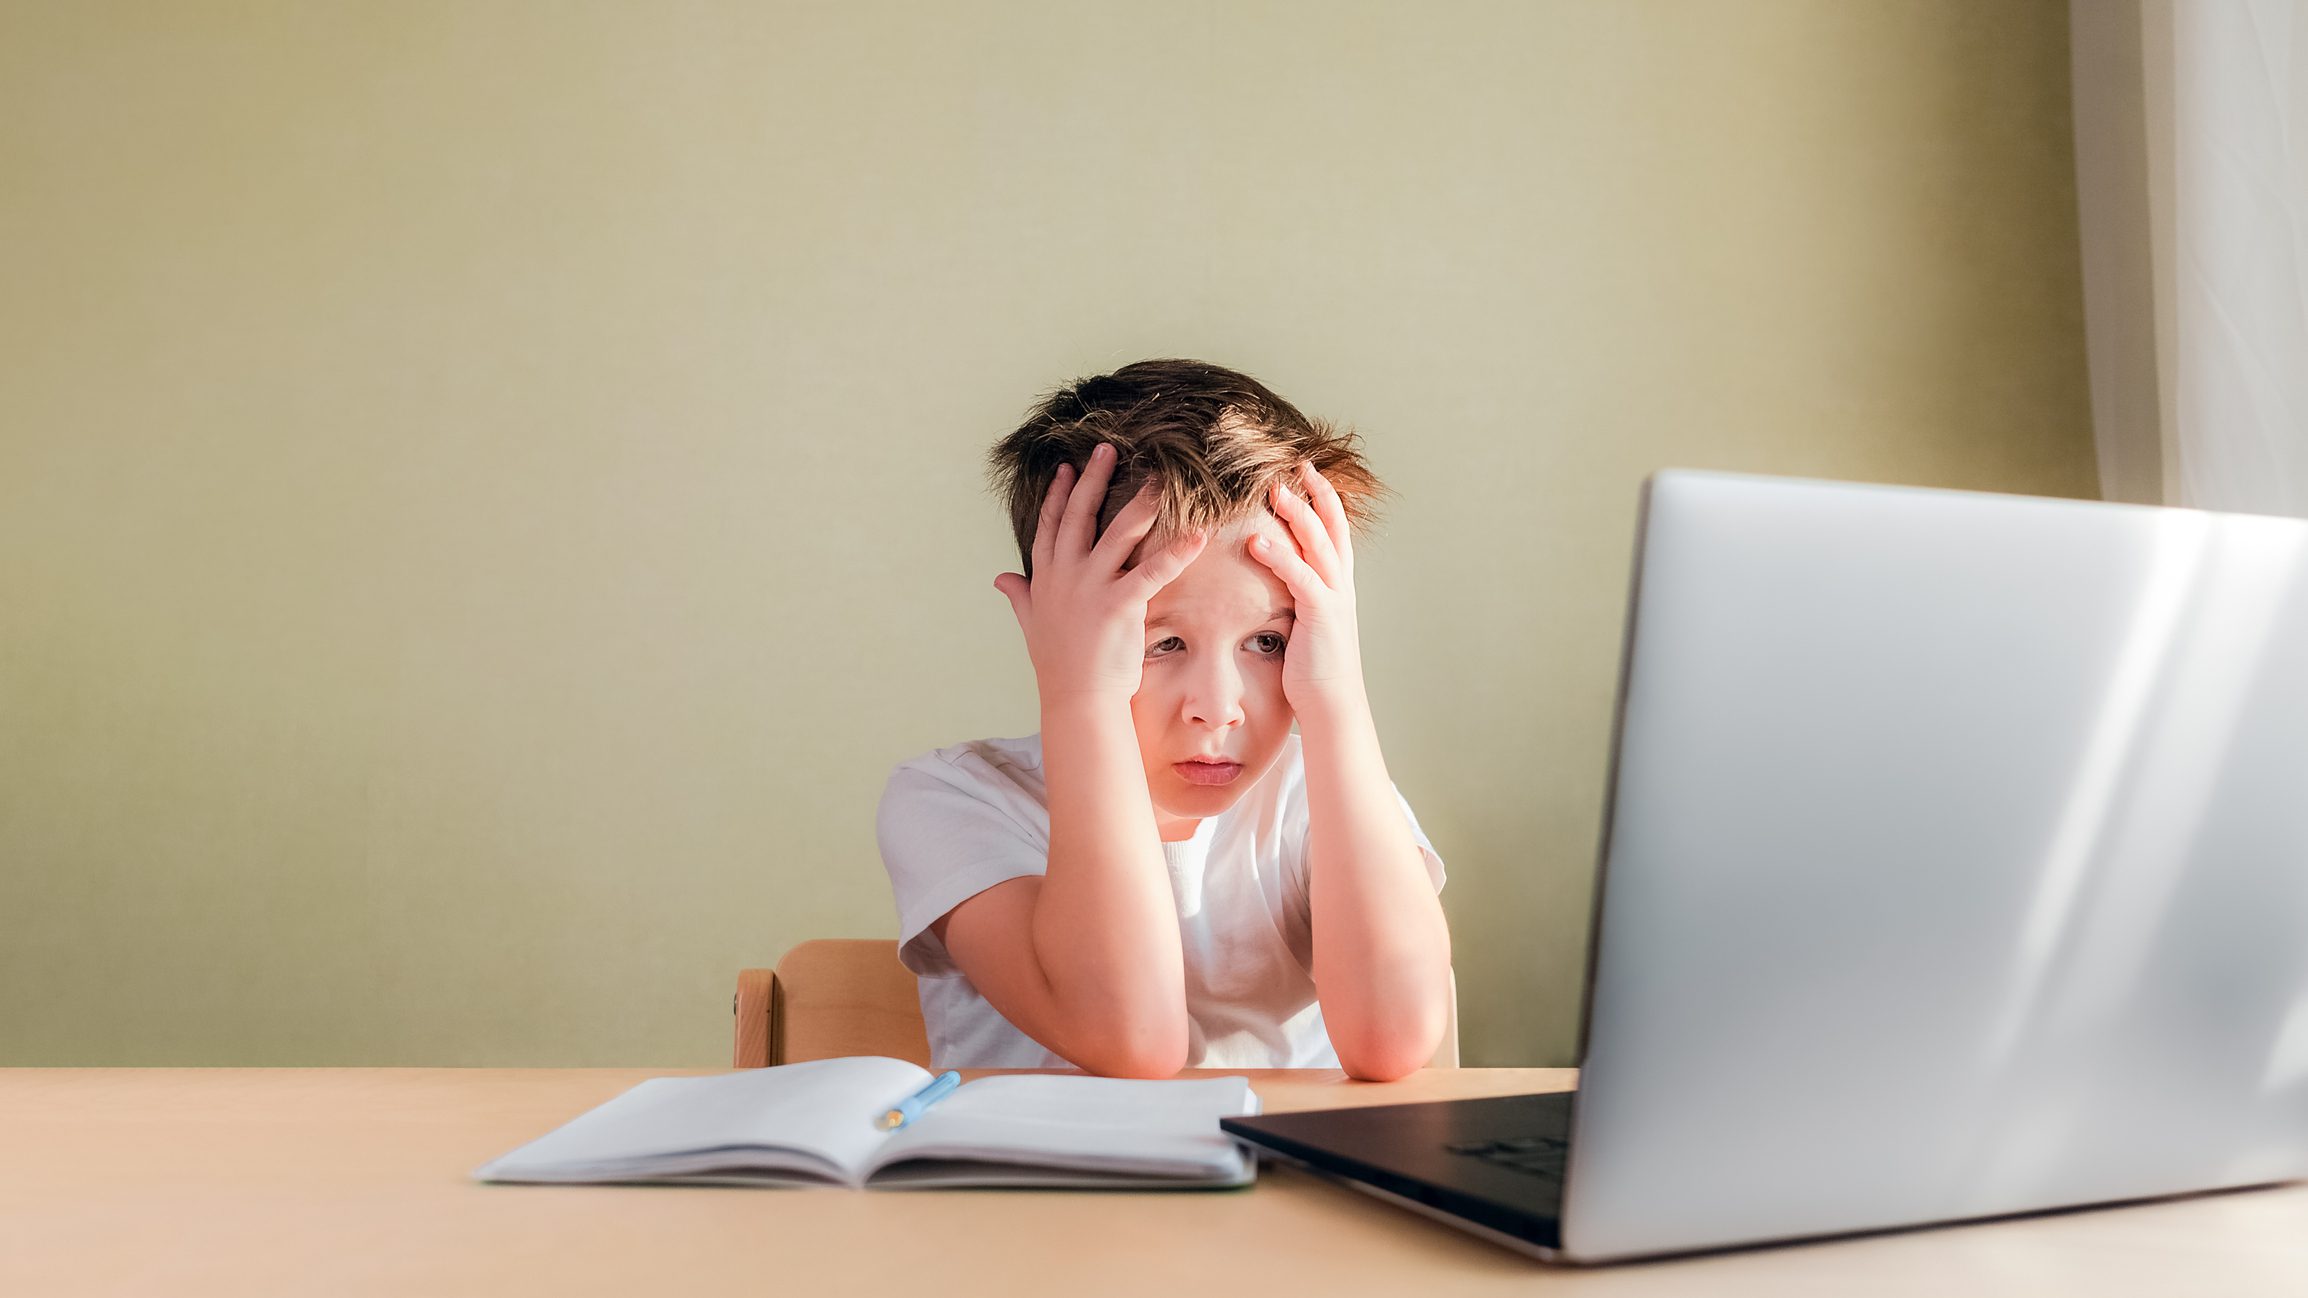 El niño se sienta en el escritorio, mira tristemente la computadora y sostiene su cabeza con las manos